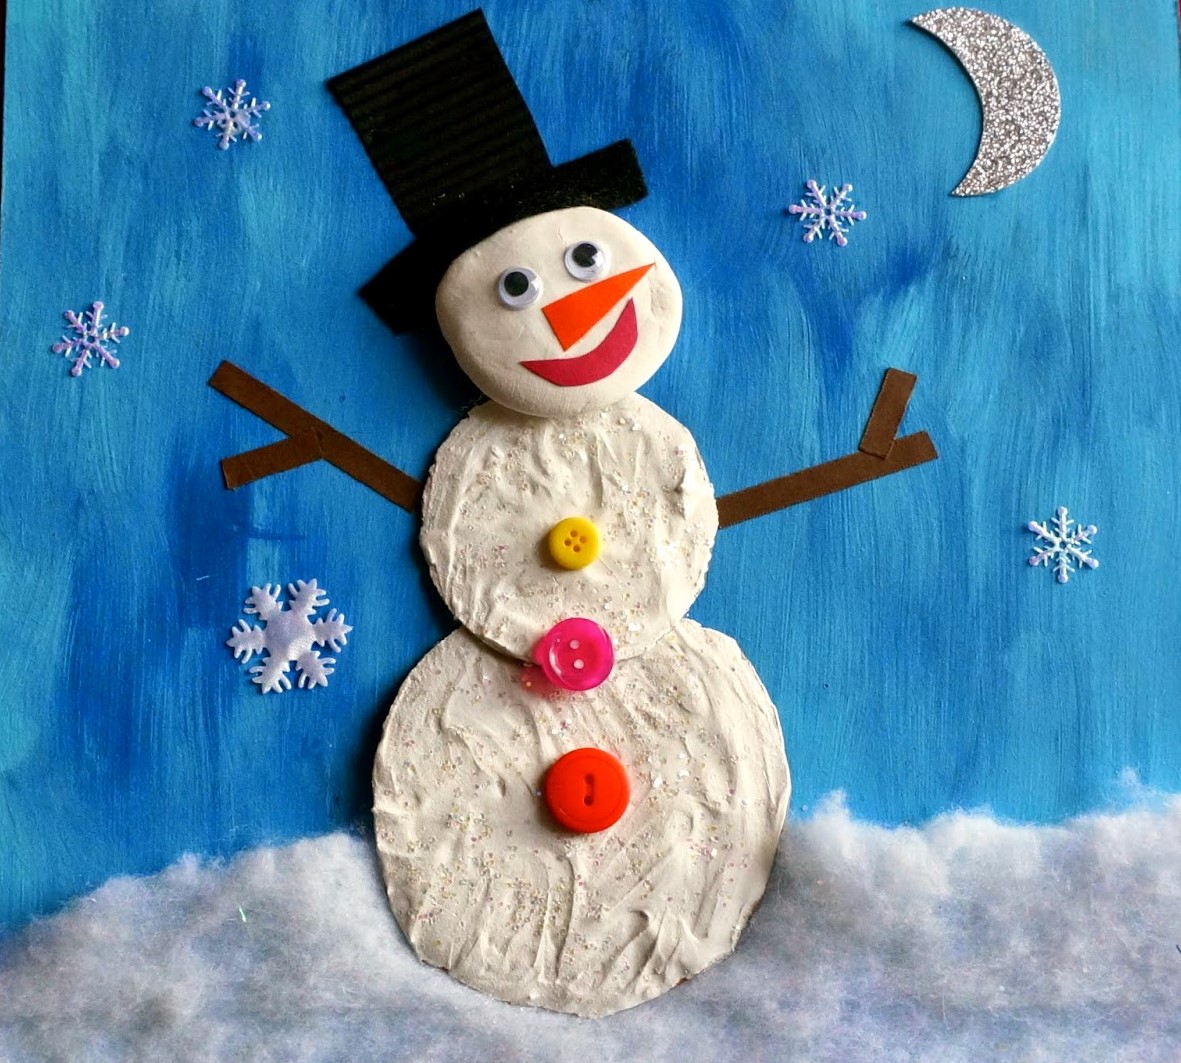 Снеговик своими руками на новый год: поделки в детский сад и школу